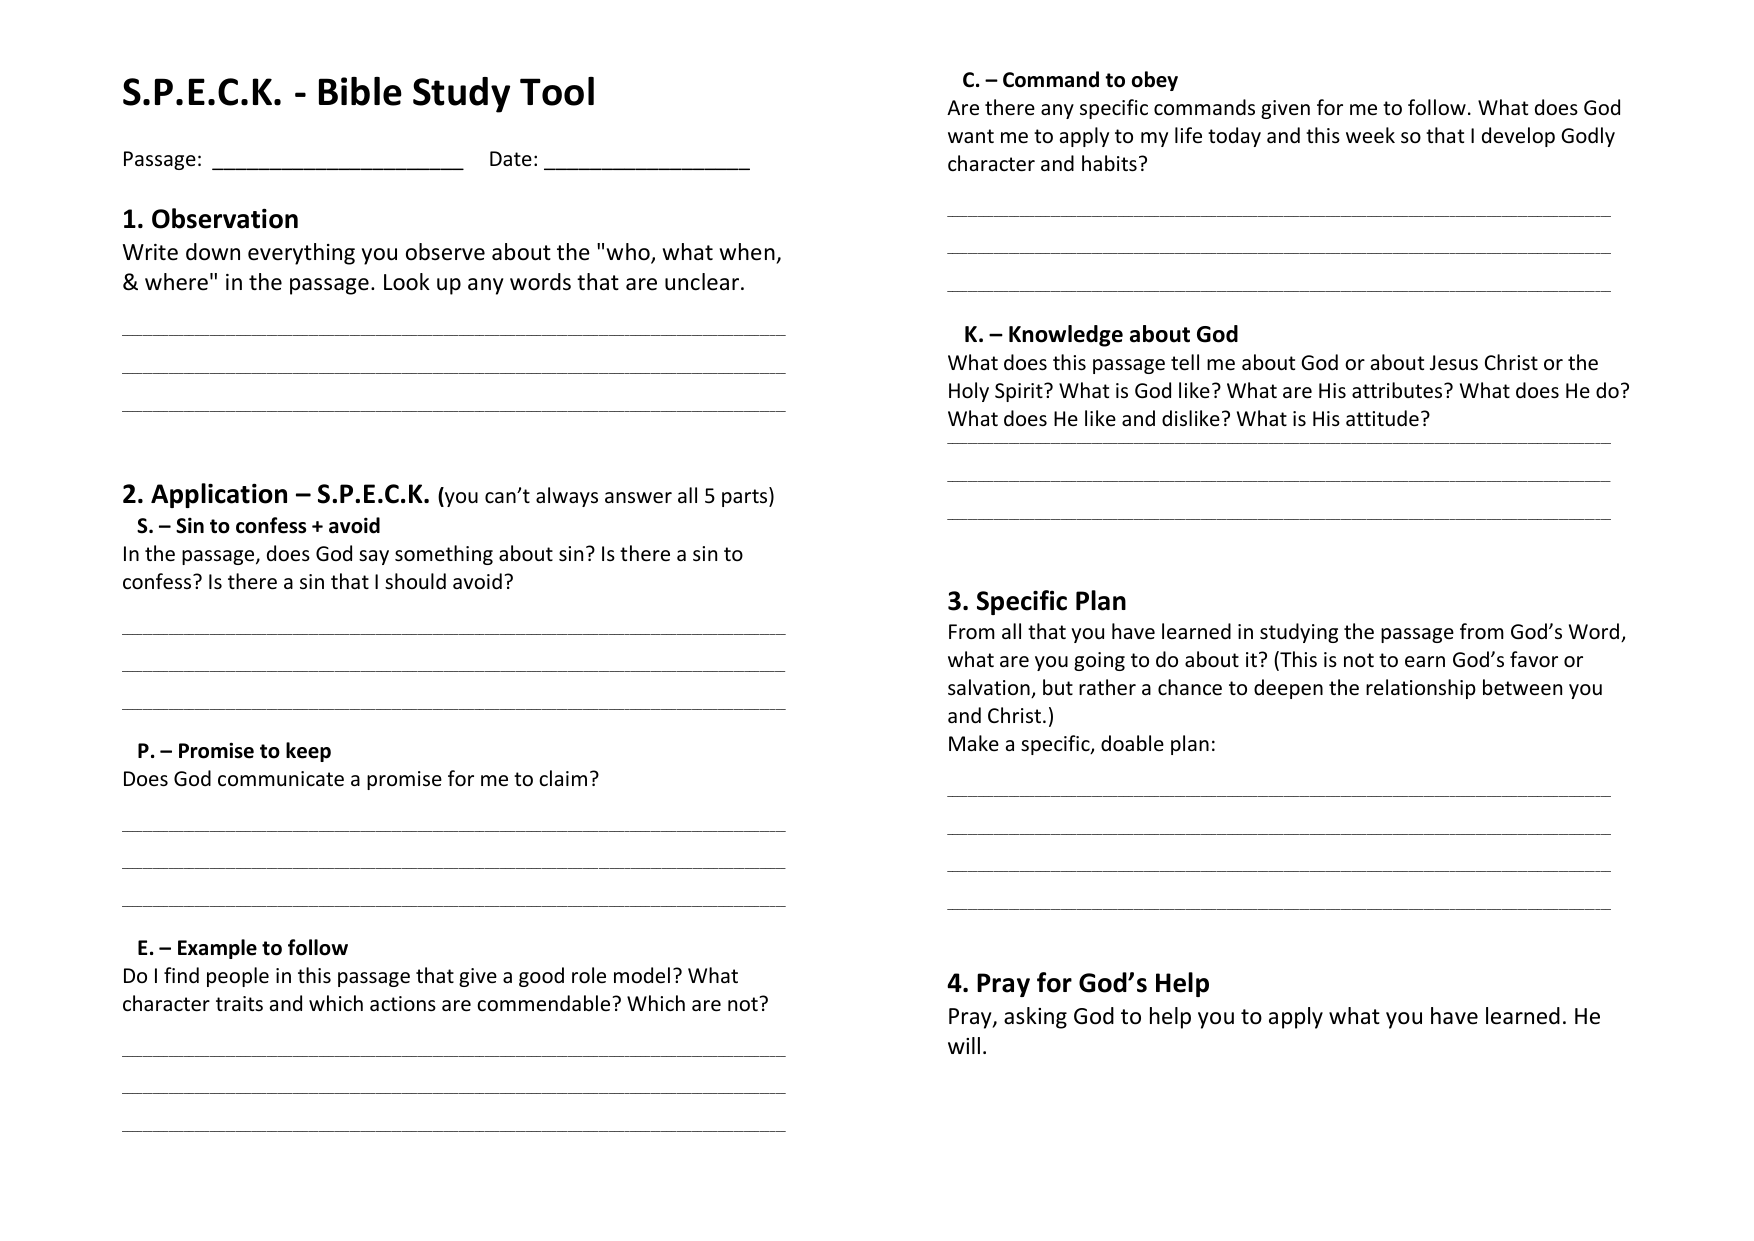 s.p.e.c.k. bible study tool a188 (18)